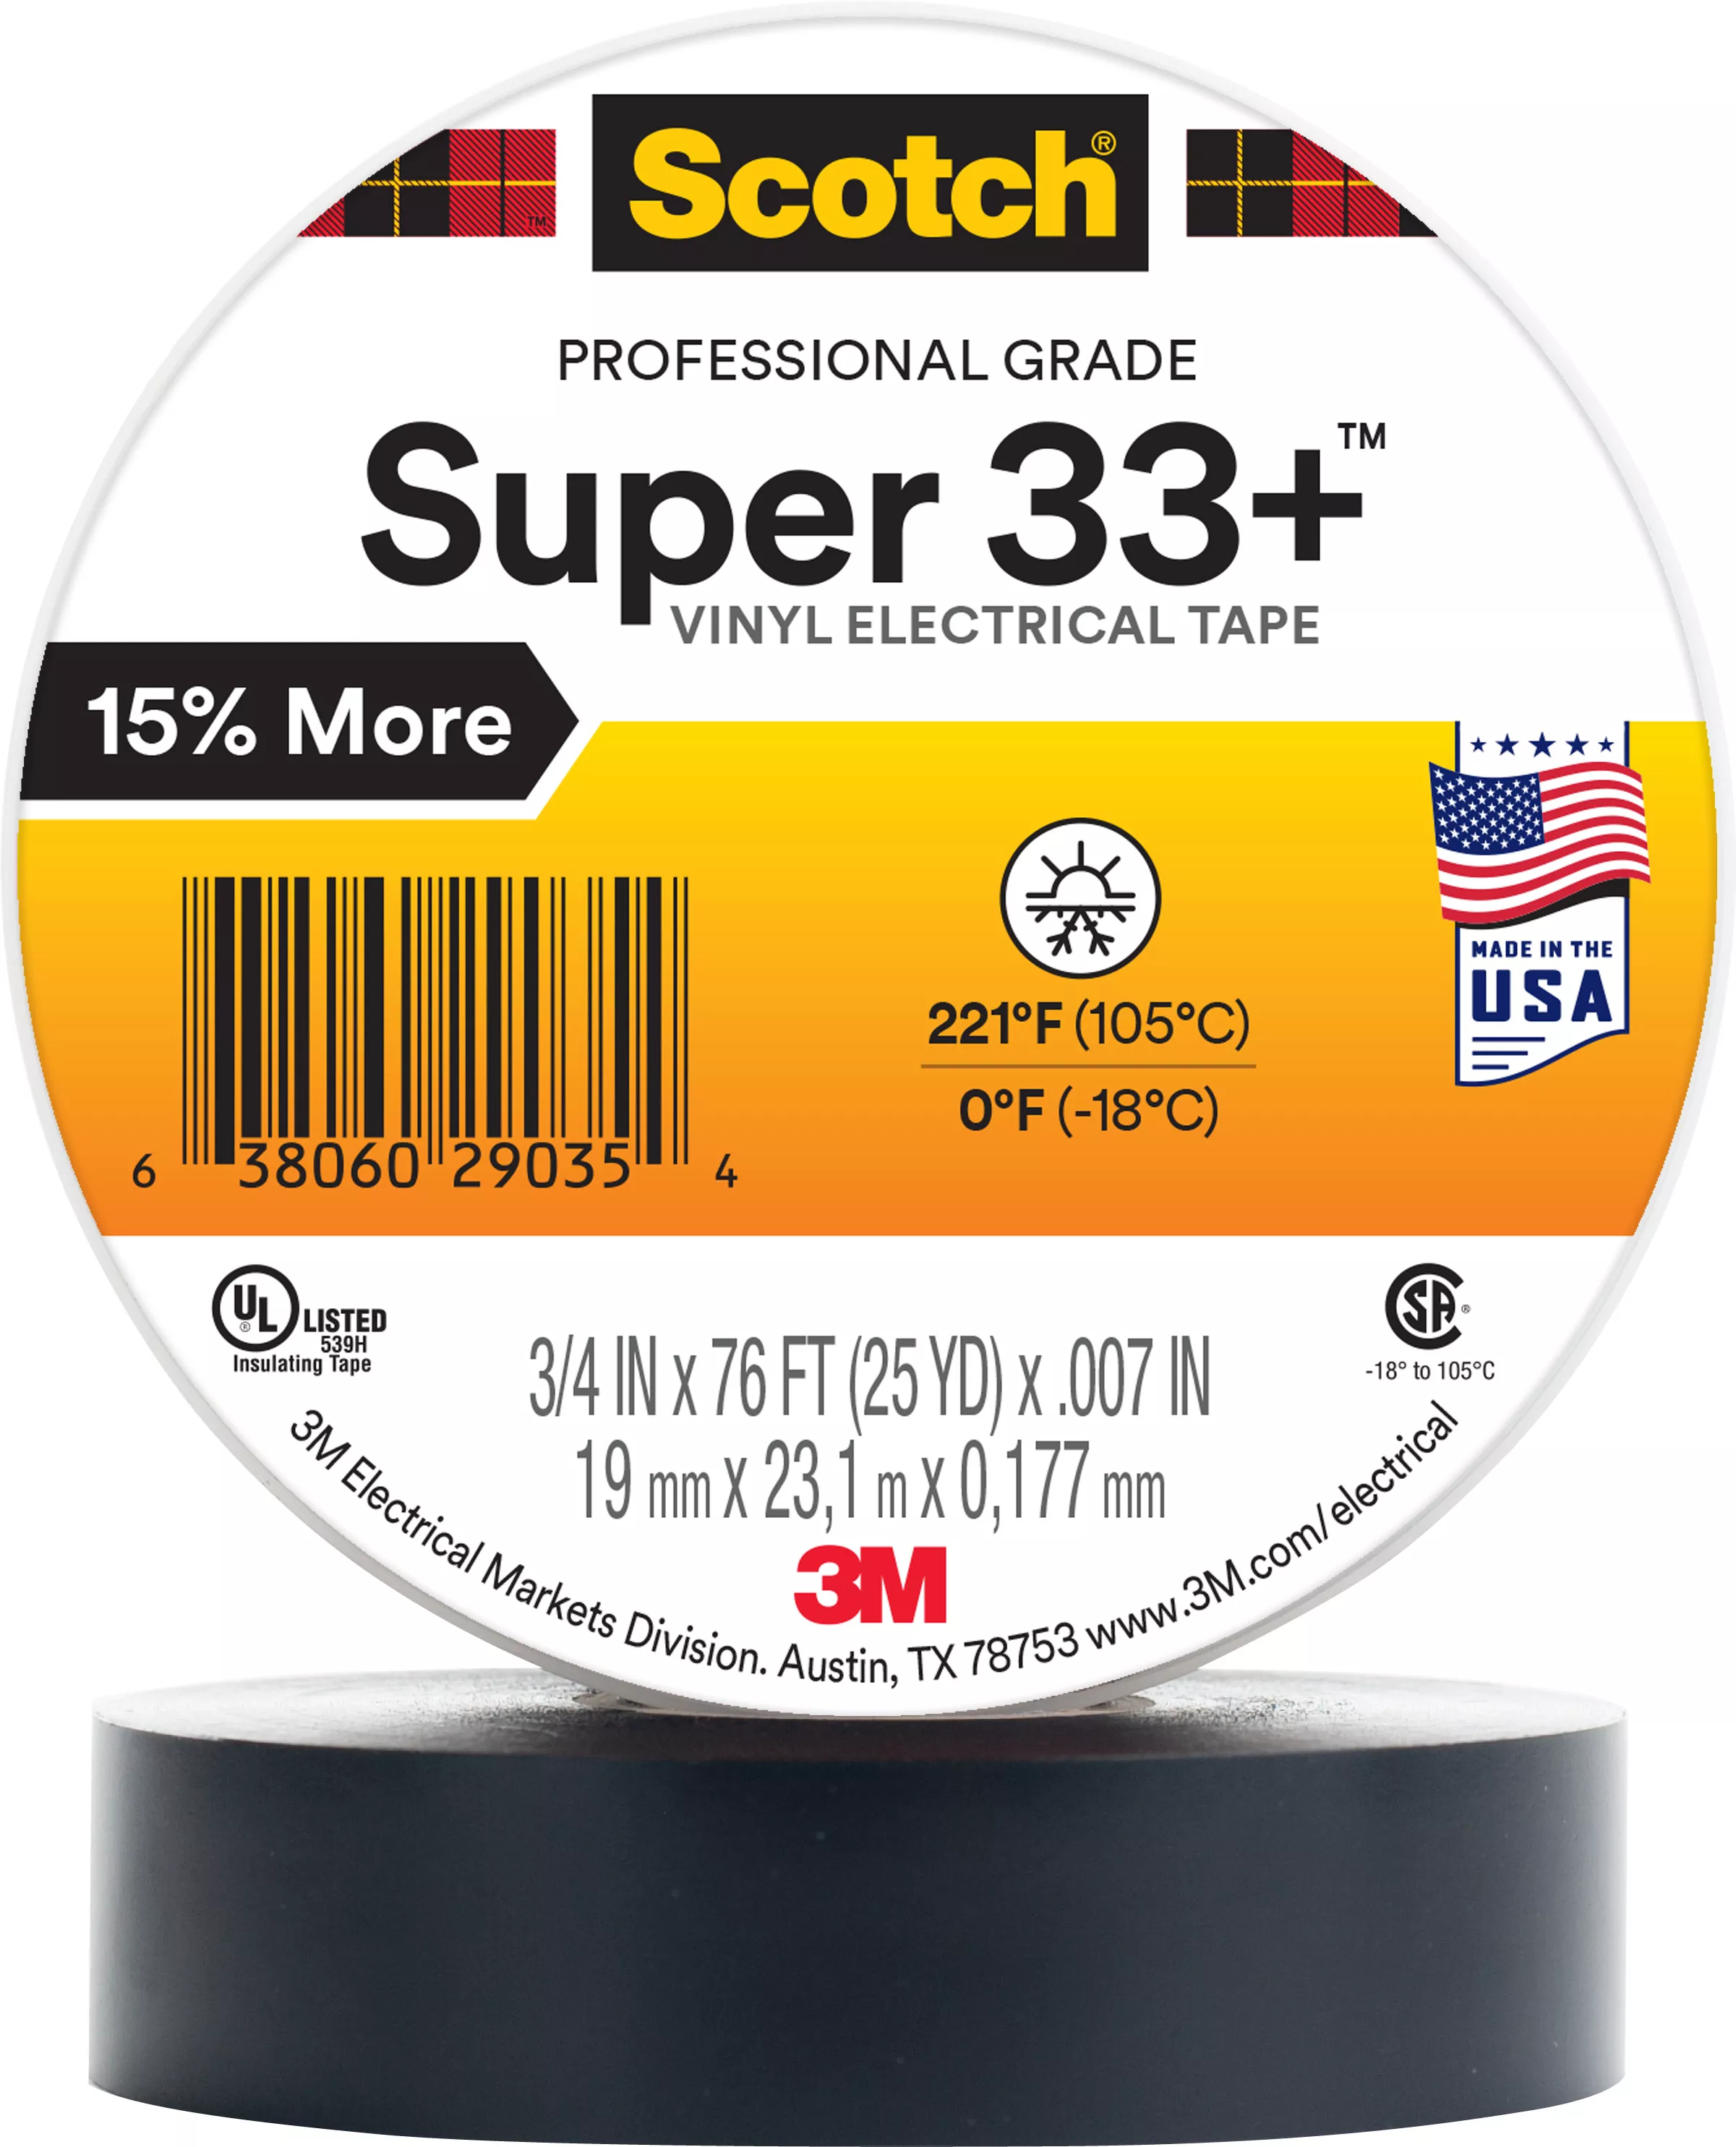 Scotch® Super 33+ Vinyl Electrical Tape, 2 in X 36 yd, 1 in Core, Black,
1 roll/carton, 25 rolls/Case